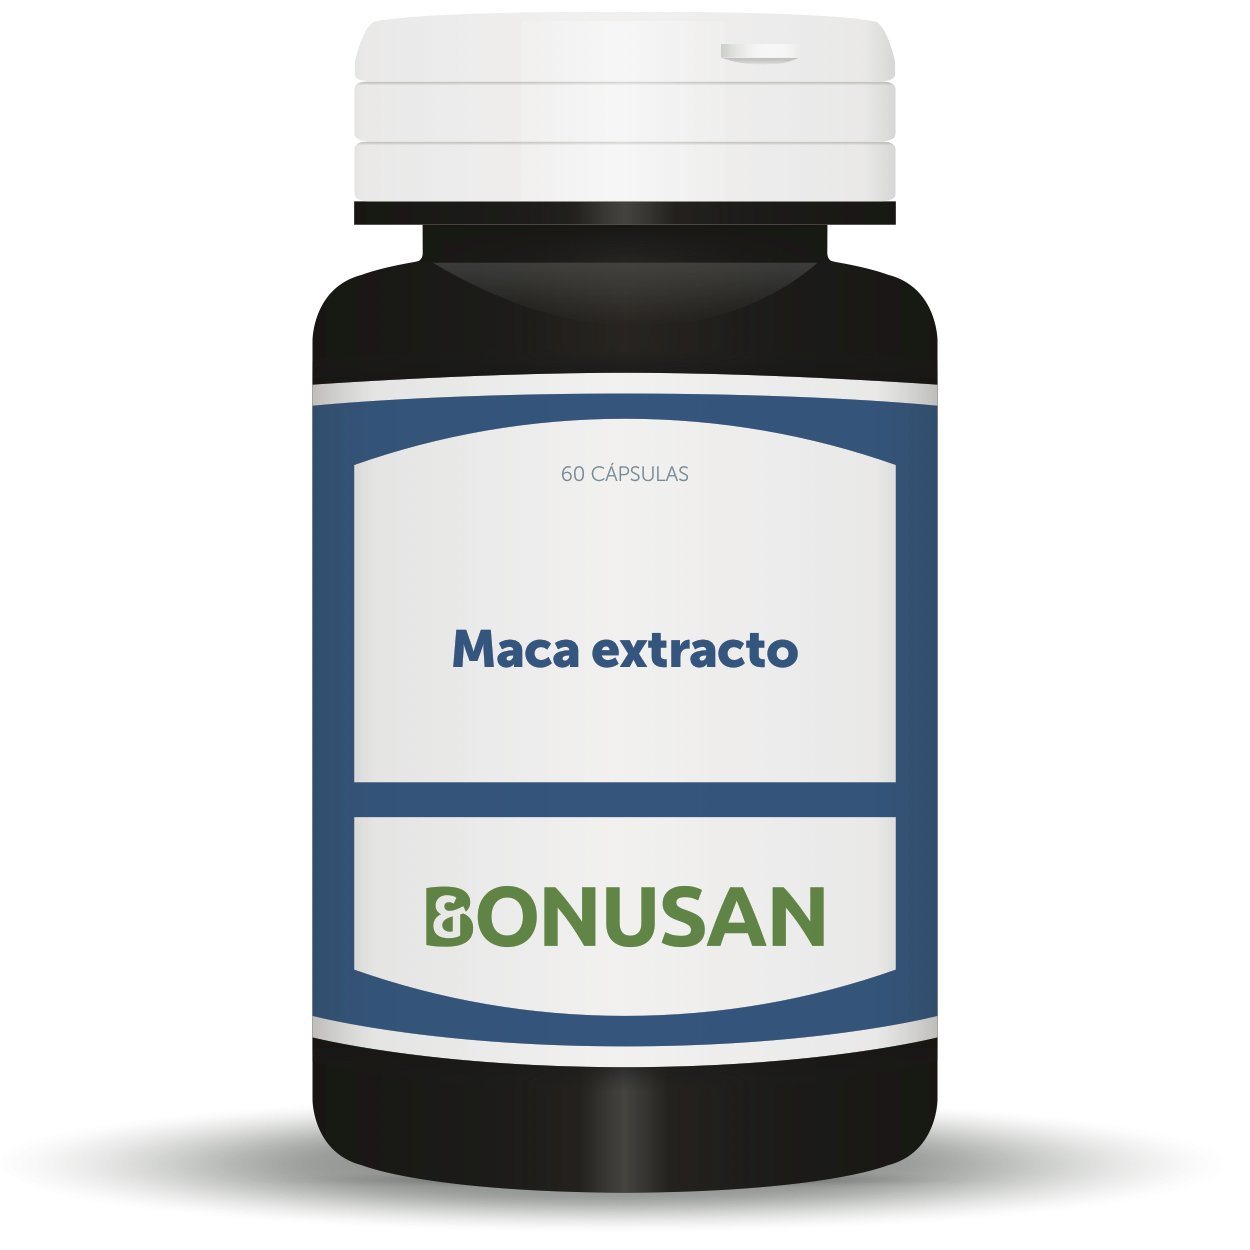 Maca Extracto 60 Capsulas | Bonusan - Dietetica Ferrer